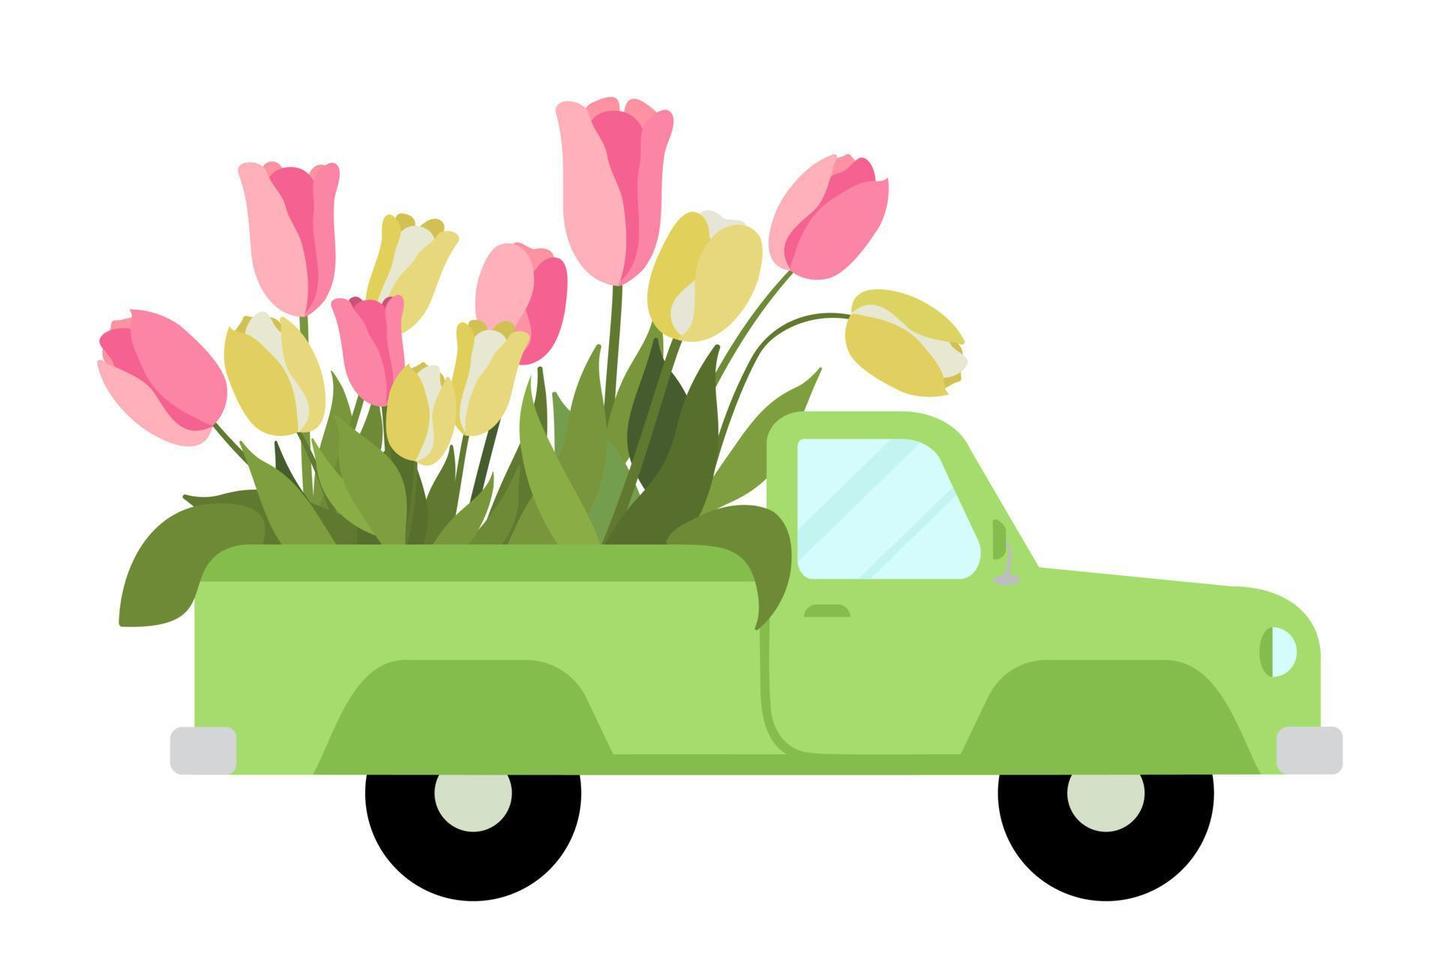 uma caminhonete retrô verde com flores tulipas rosa e amarelas. isolado no fundo branco. ilustração vetorial de carro antigo de pintados à mão. perfeito para cartões, convite de casamento e saudações de primavera vetor